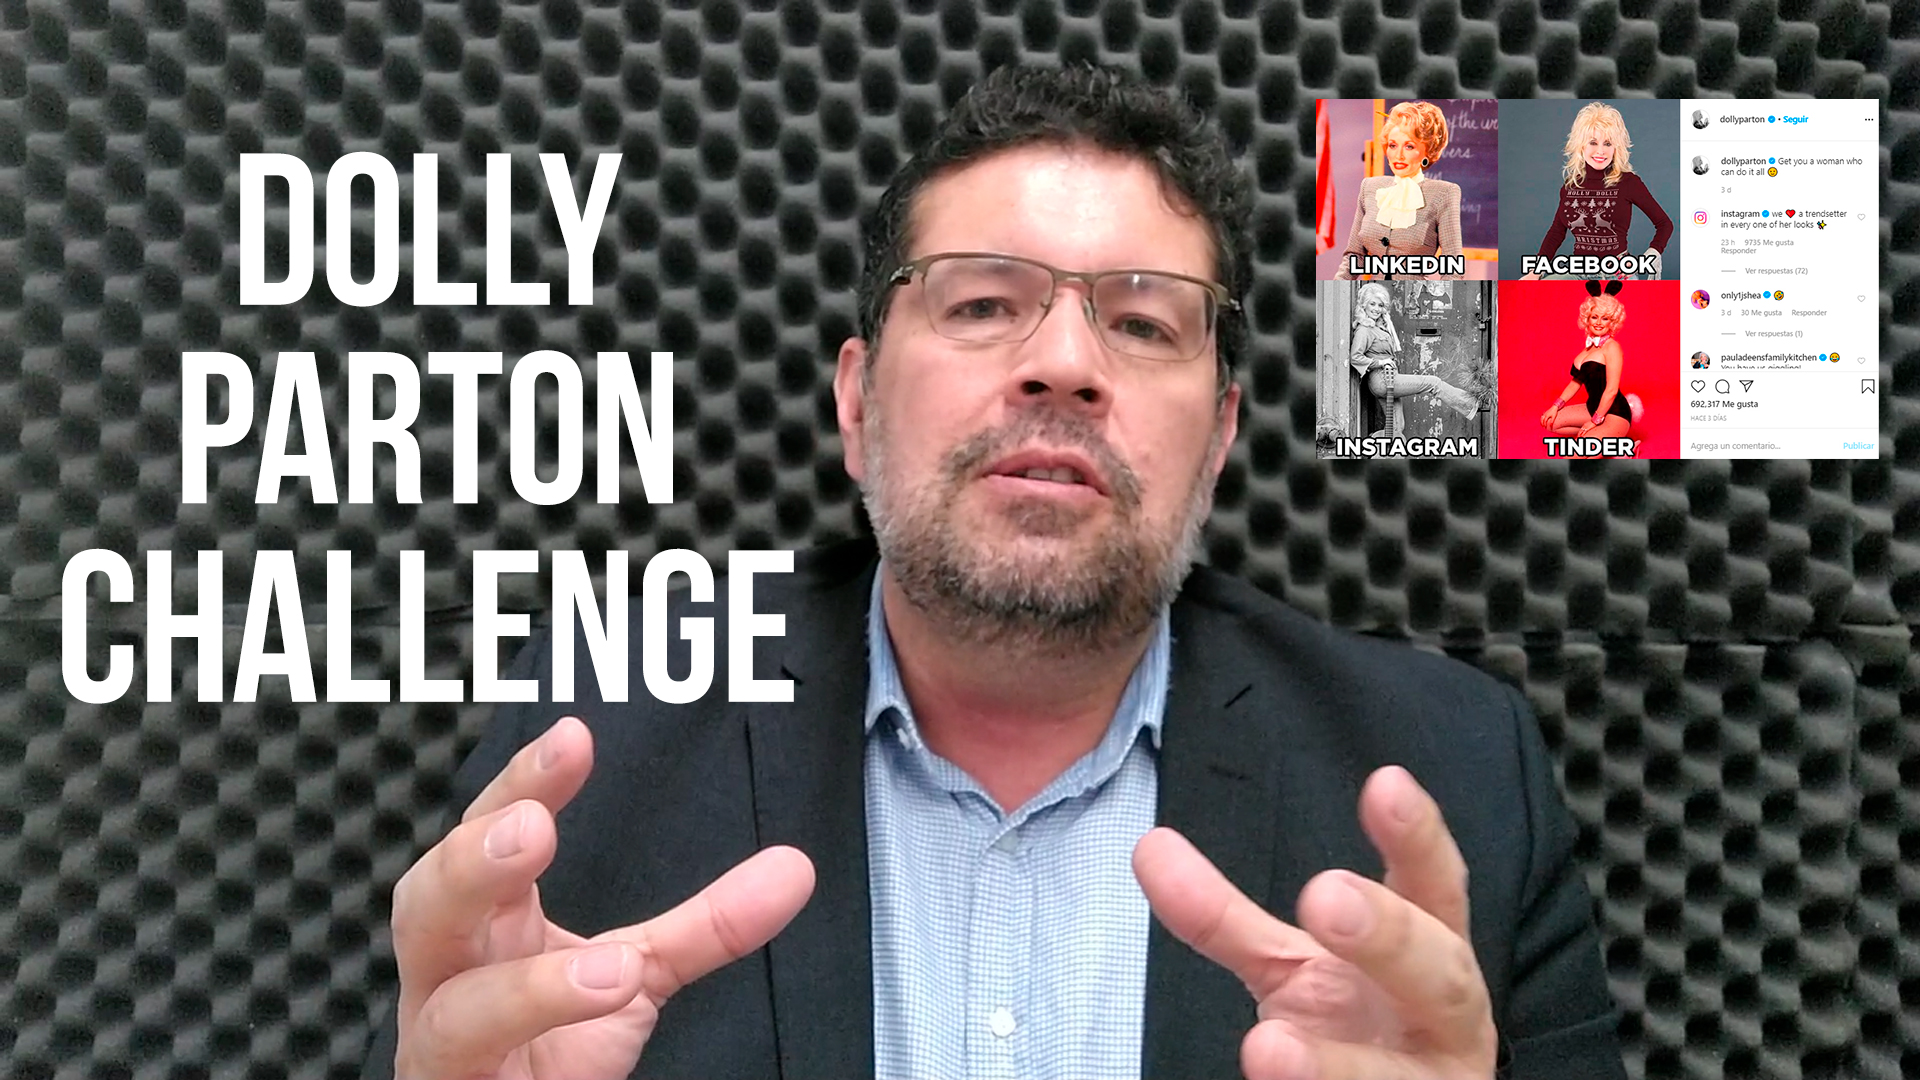 El “Dolly Parton Challenge” nos enseña como funcionan las redes sociales